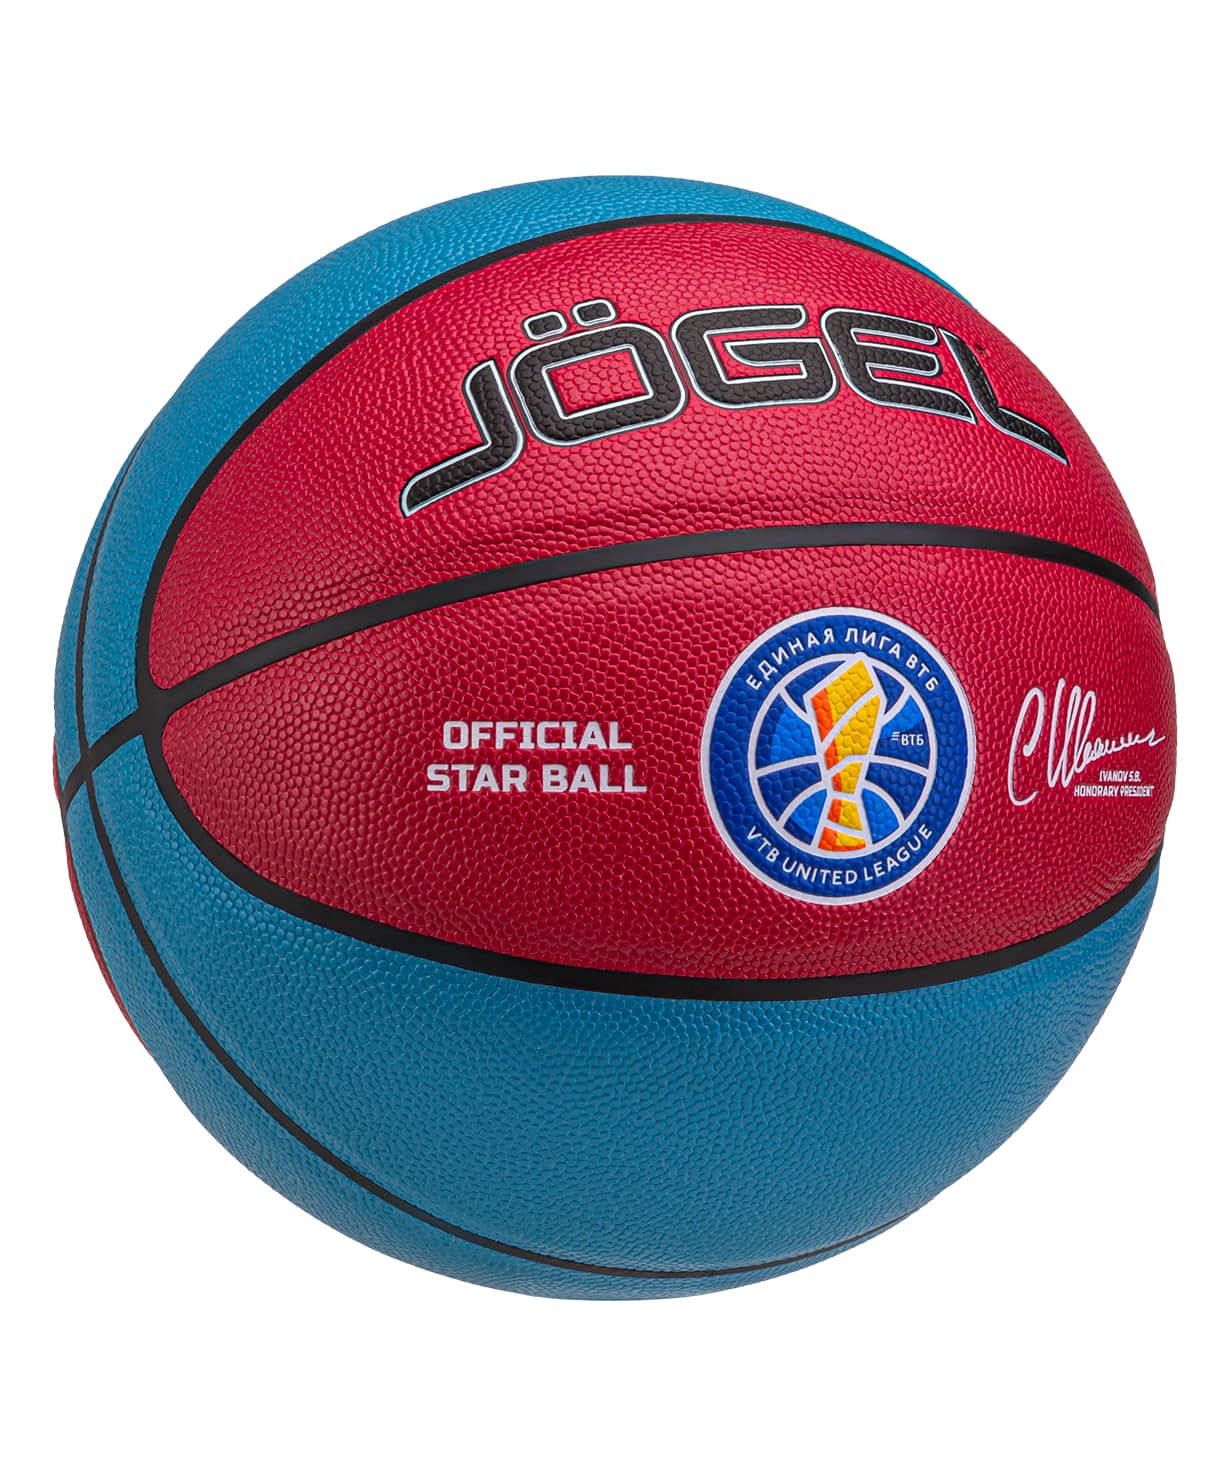 Мяч баскетбольный Jogel Allstar-2024 №7 1230_1479